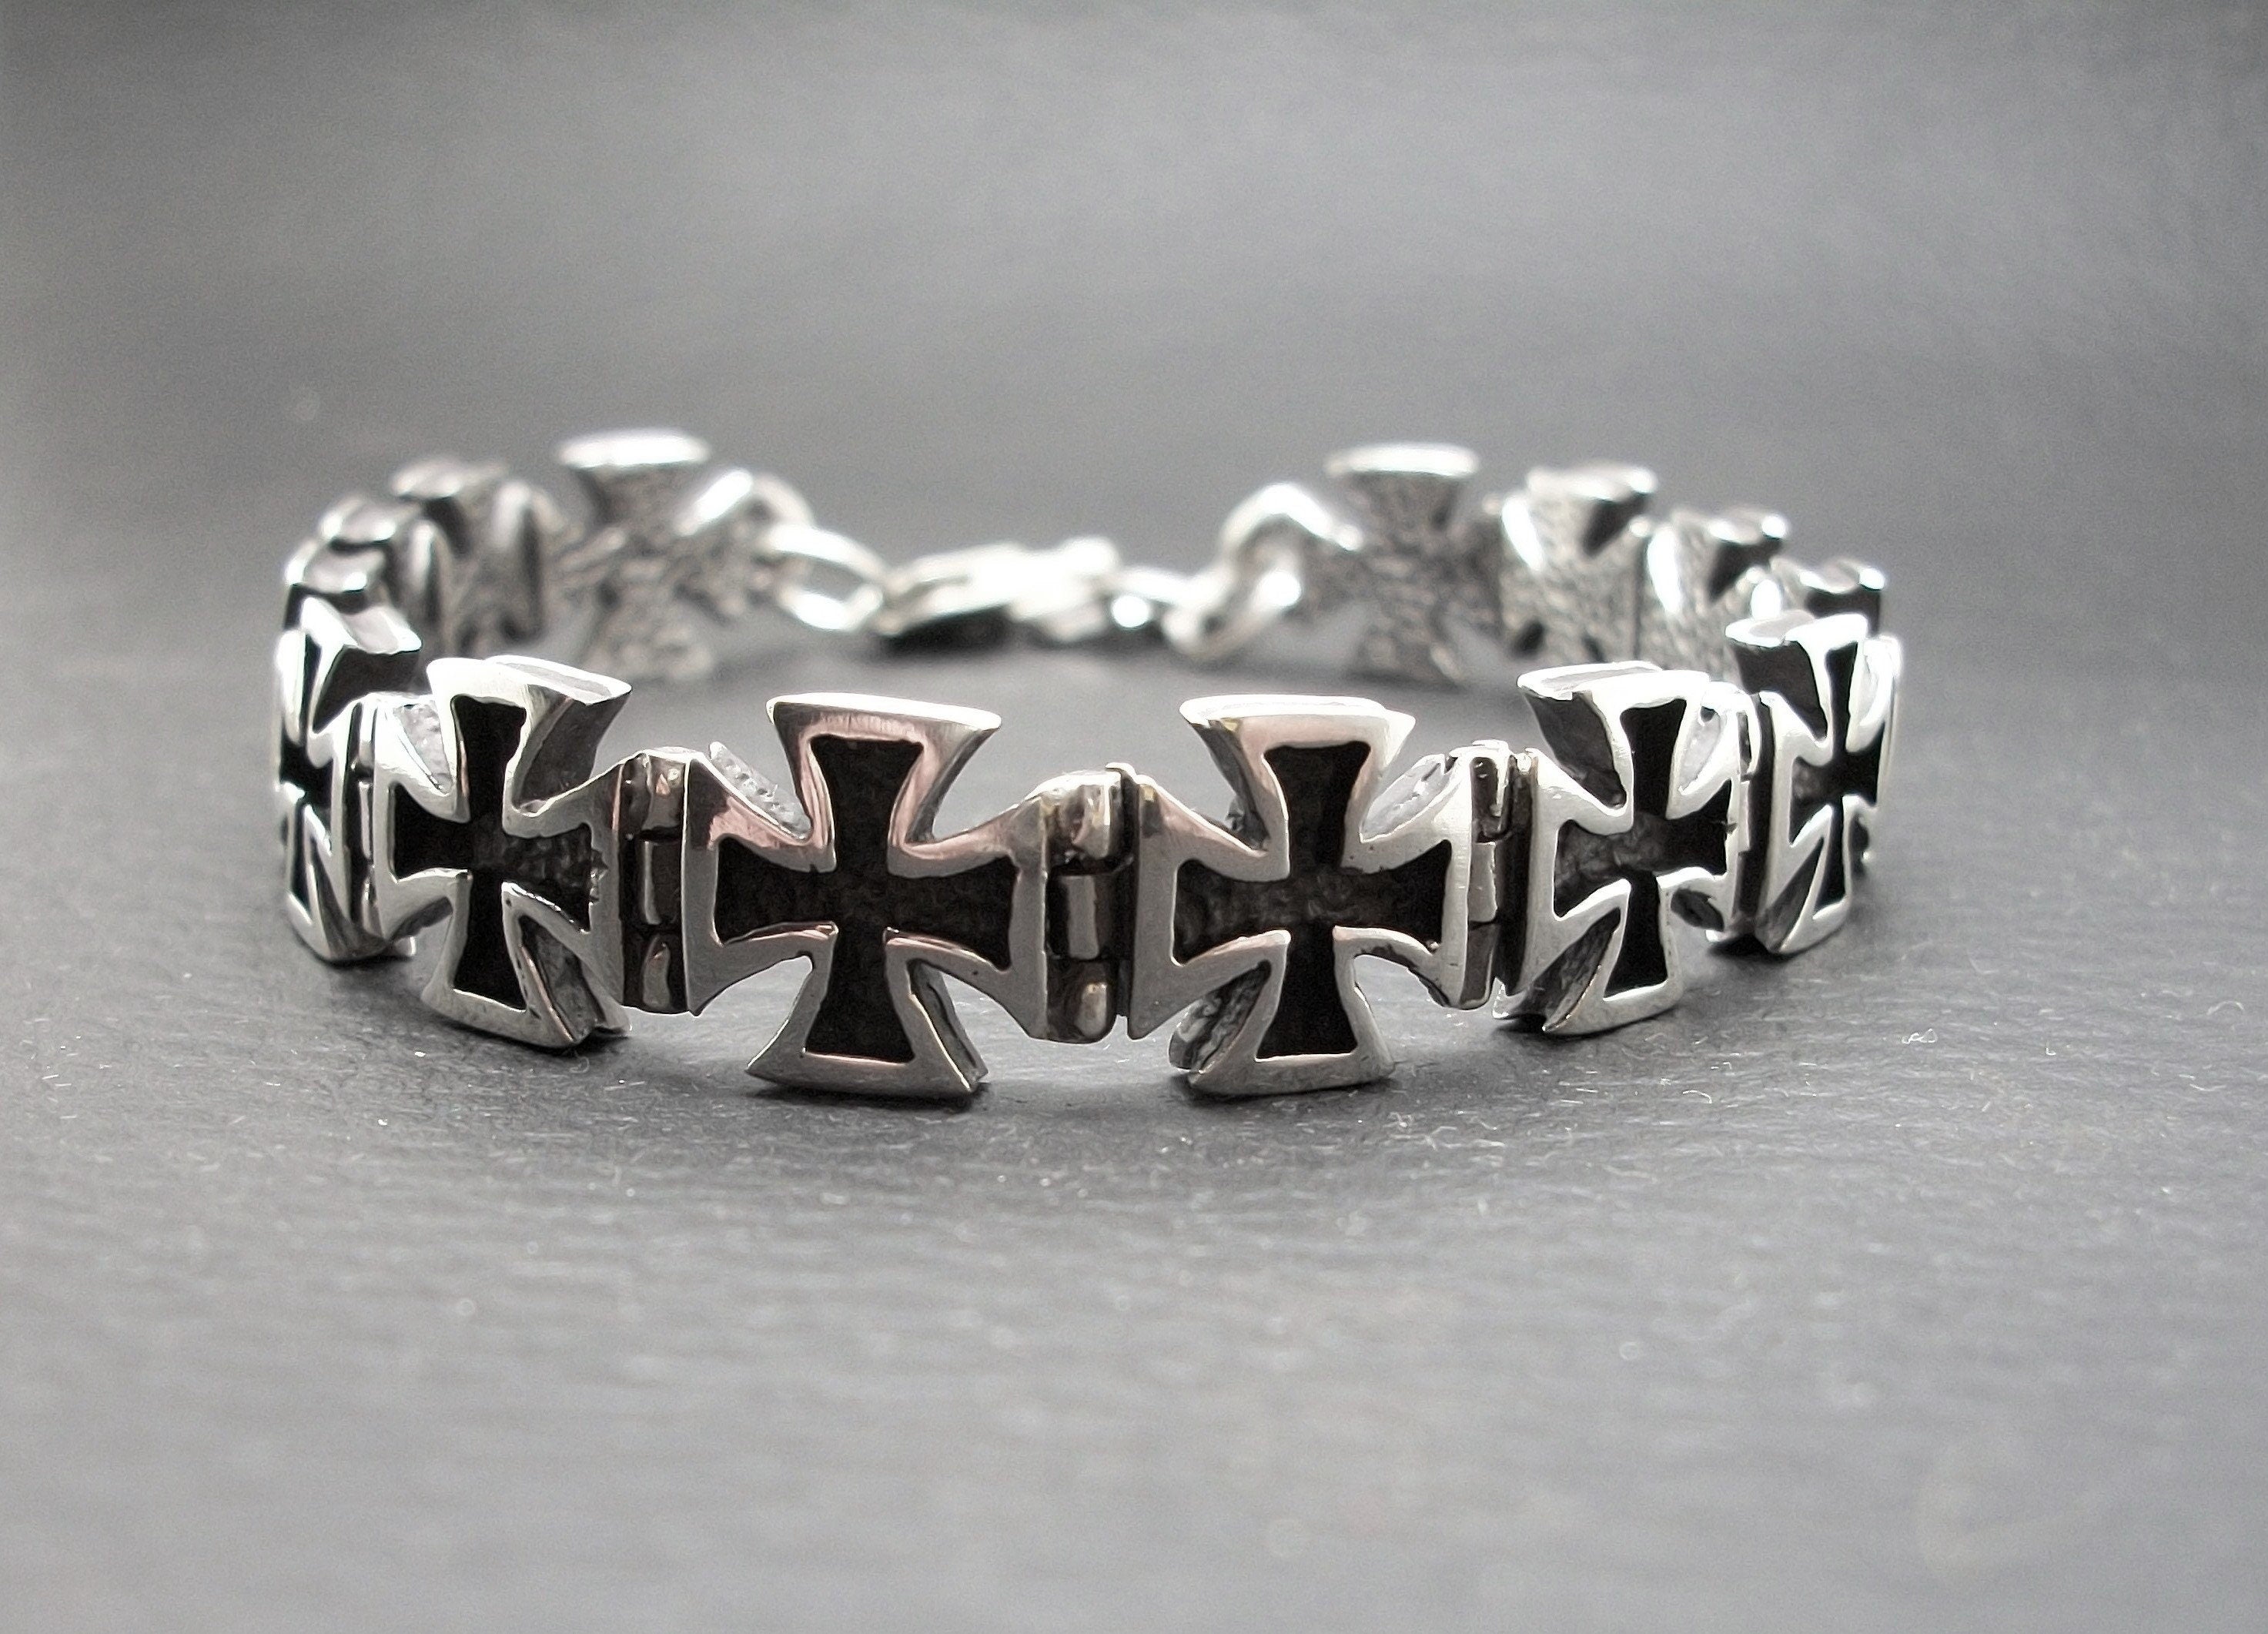 Iron Cross Bracelet - Sterling Silver bracelet chain